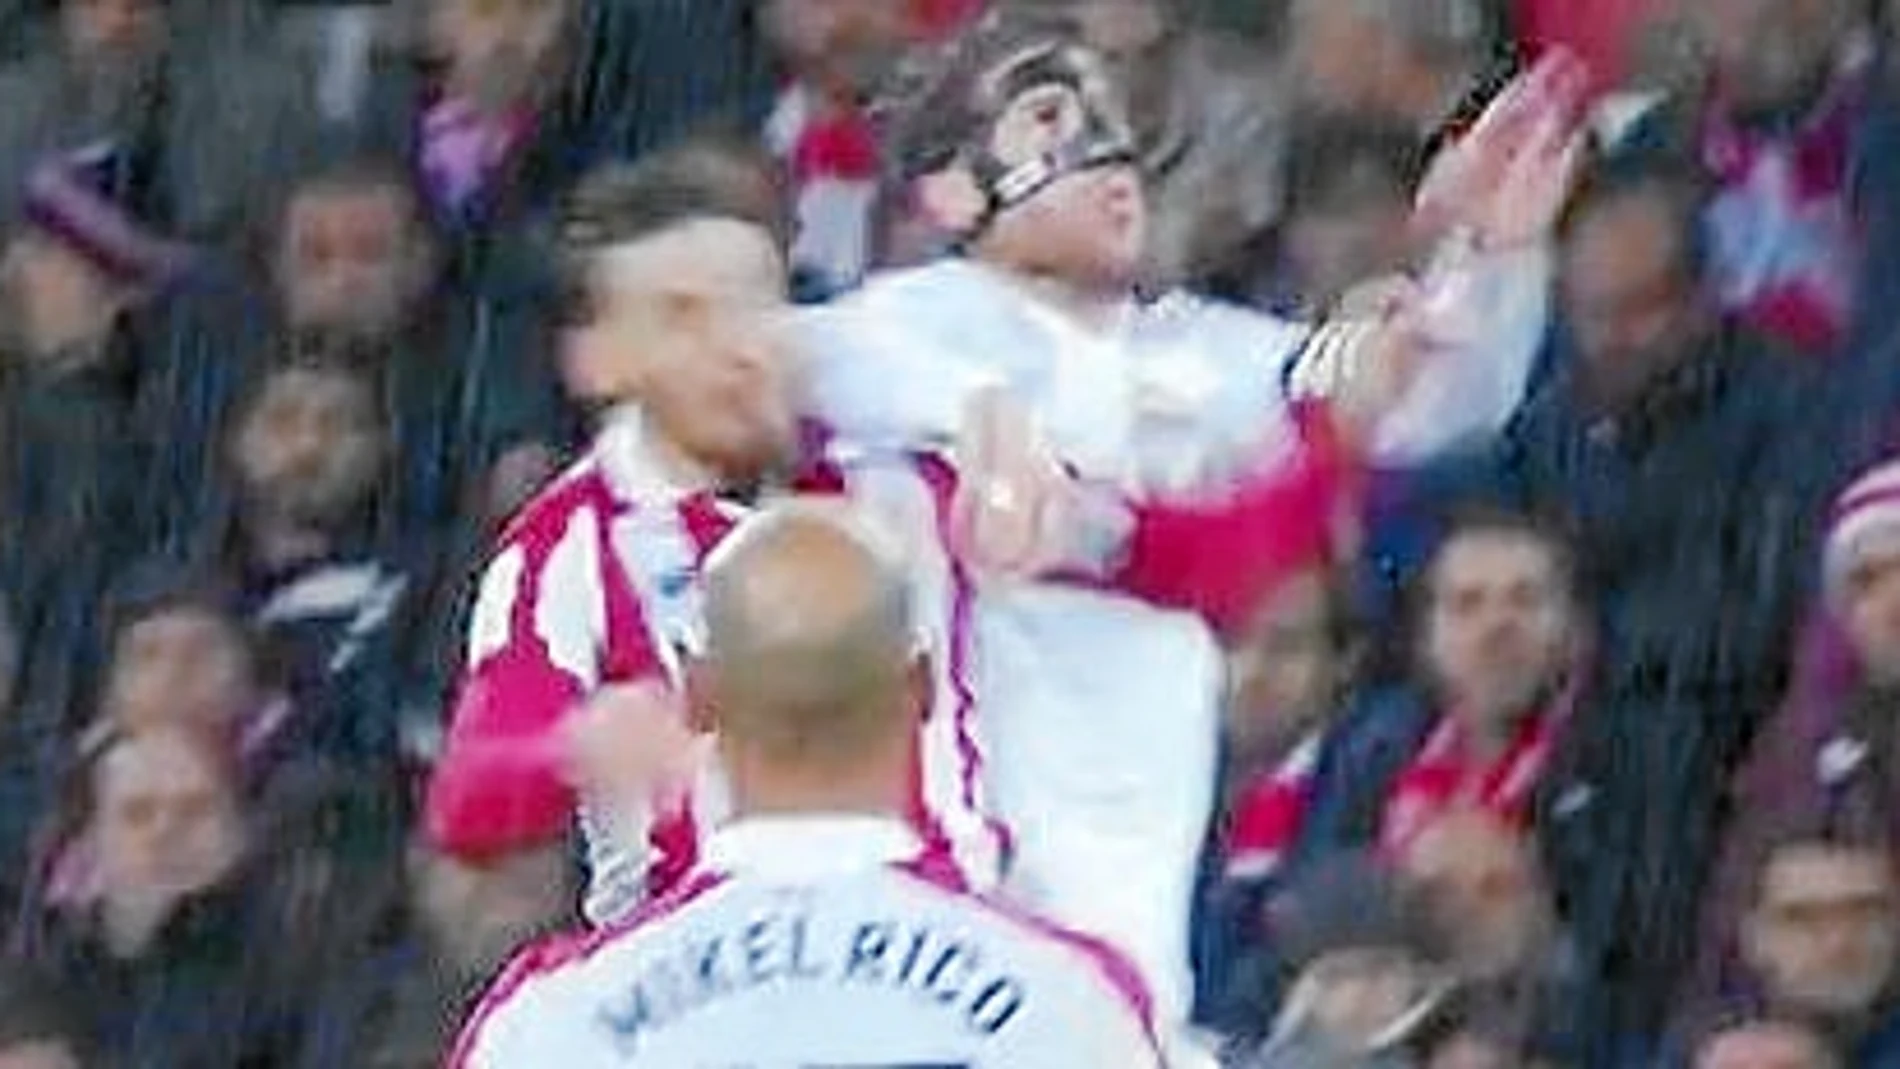 Las polémicas: ¿Está bien expulsado Sergio Ramos?